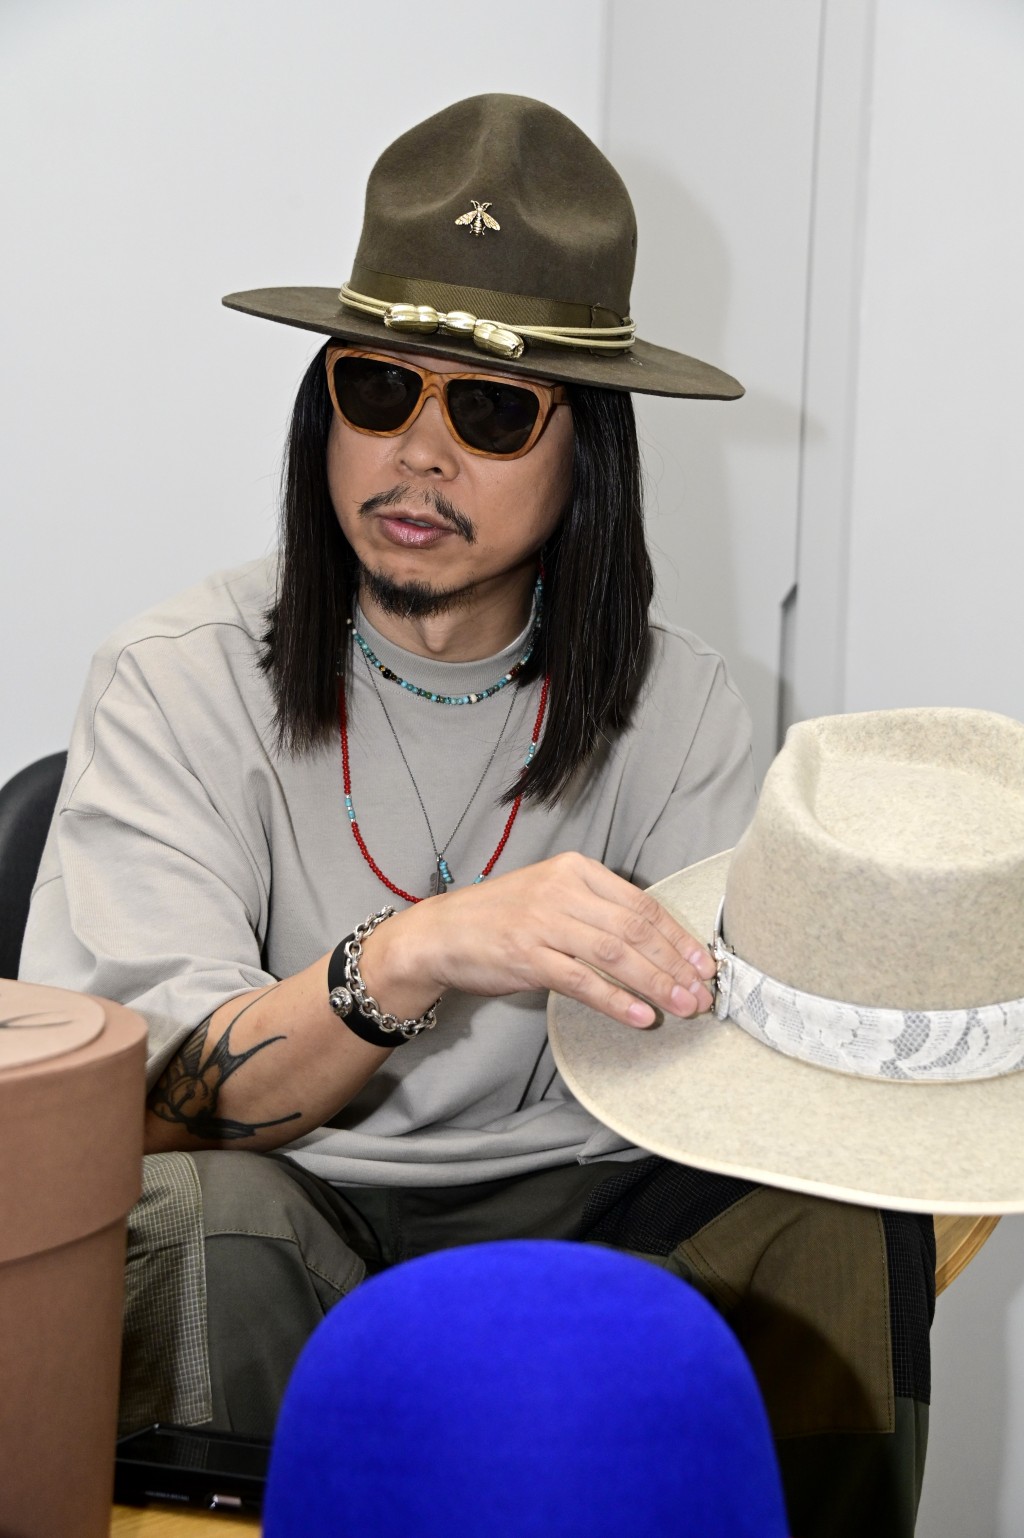 王双骏当时在演唱会担任服装的朋友。专登为这个骚设计了这章：「有啲扣咗喺件衫，我咪扣咗喺顶帽。」